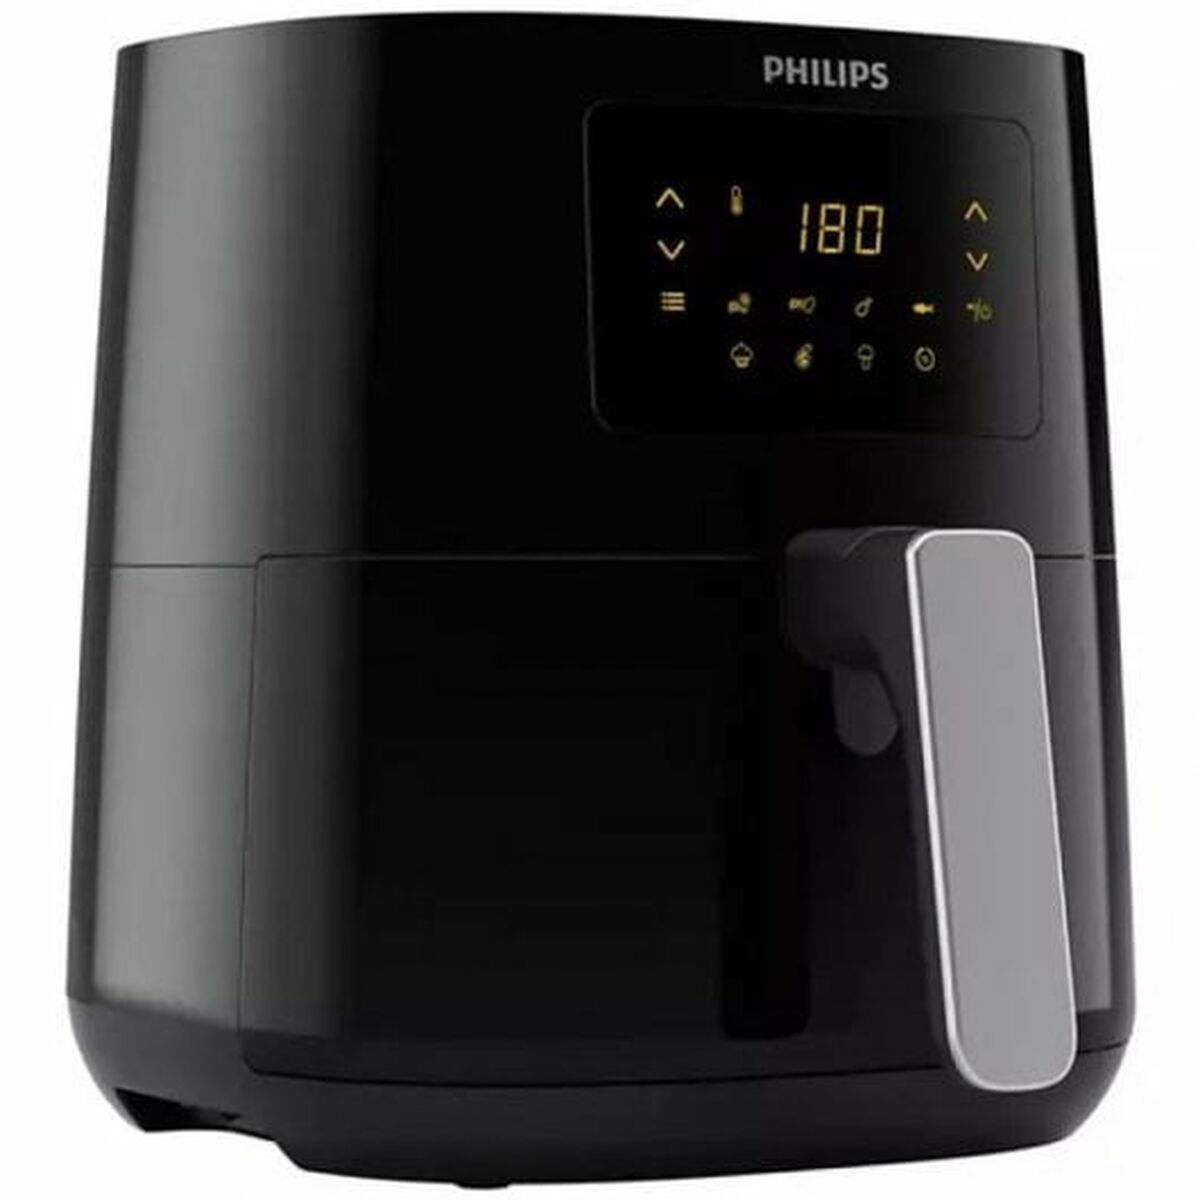 Heißluftfritteuse Philips HD9252/70 Schwarz 1400 W - CA International 